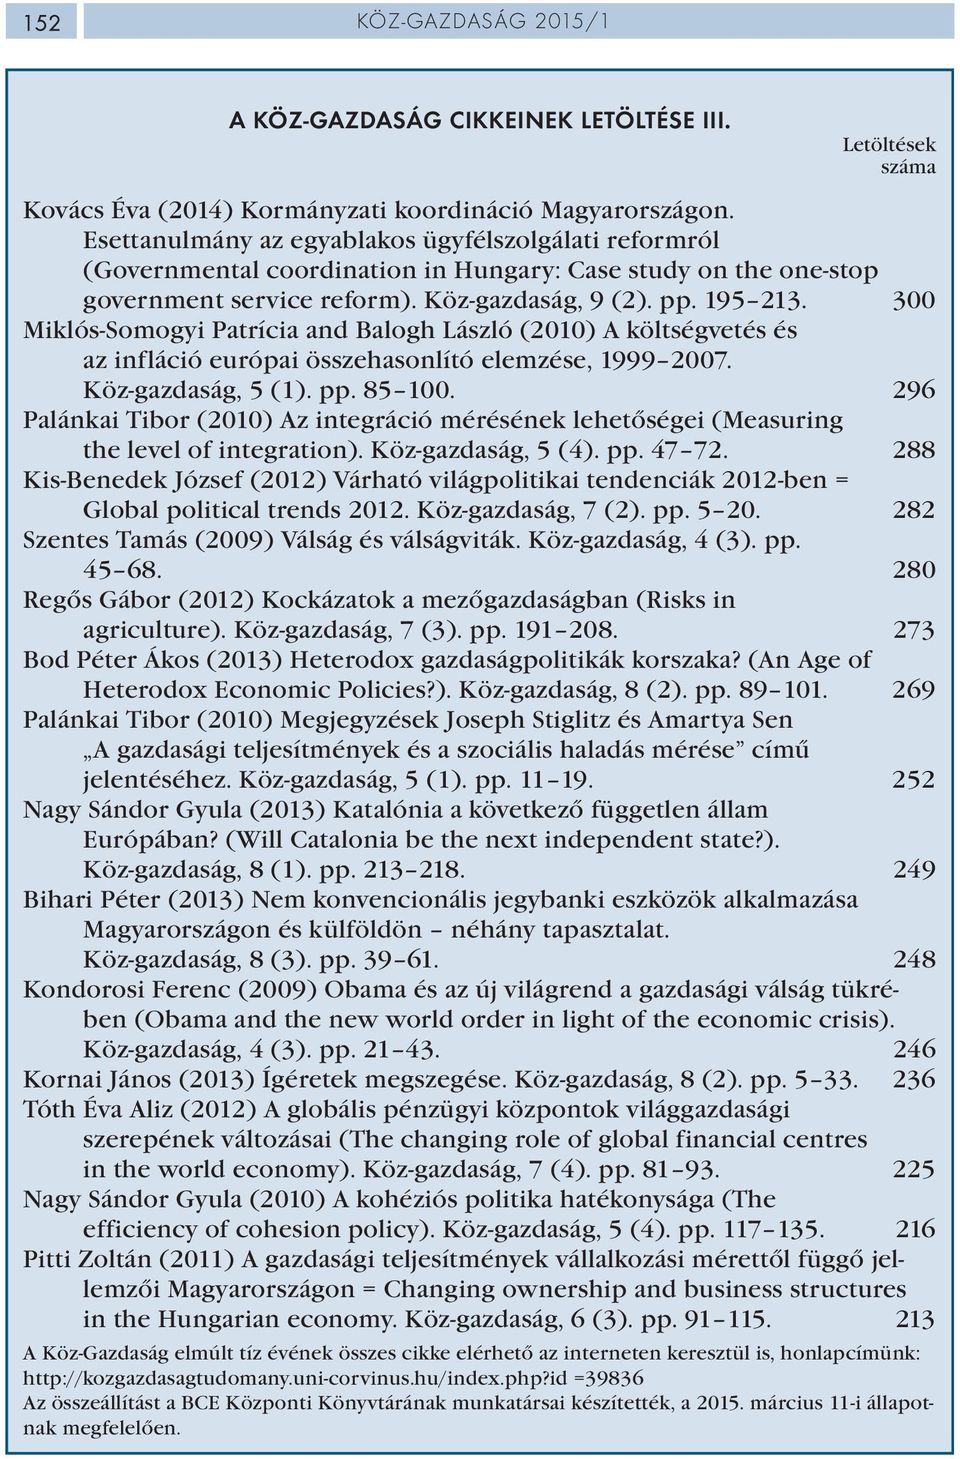 300 Miklós-Somogyi Patrícia and Balogh László (2010) A költségvetés és az infláció európai összehasonlító elemzése, 1999 2007. Köz-gazdaság, 5 (1). pp. 85 100.